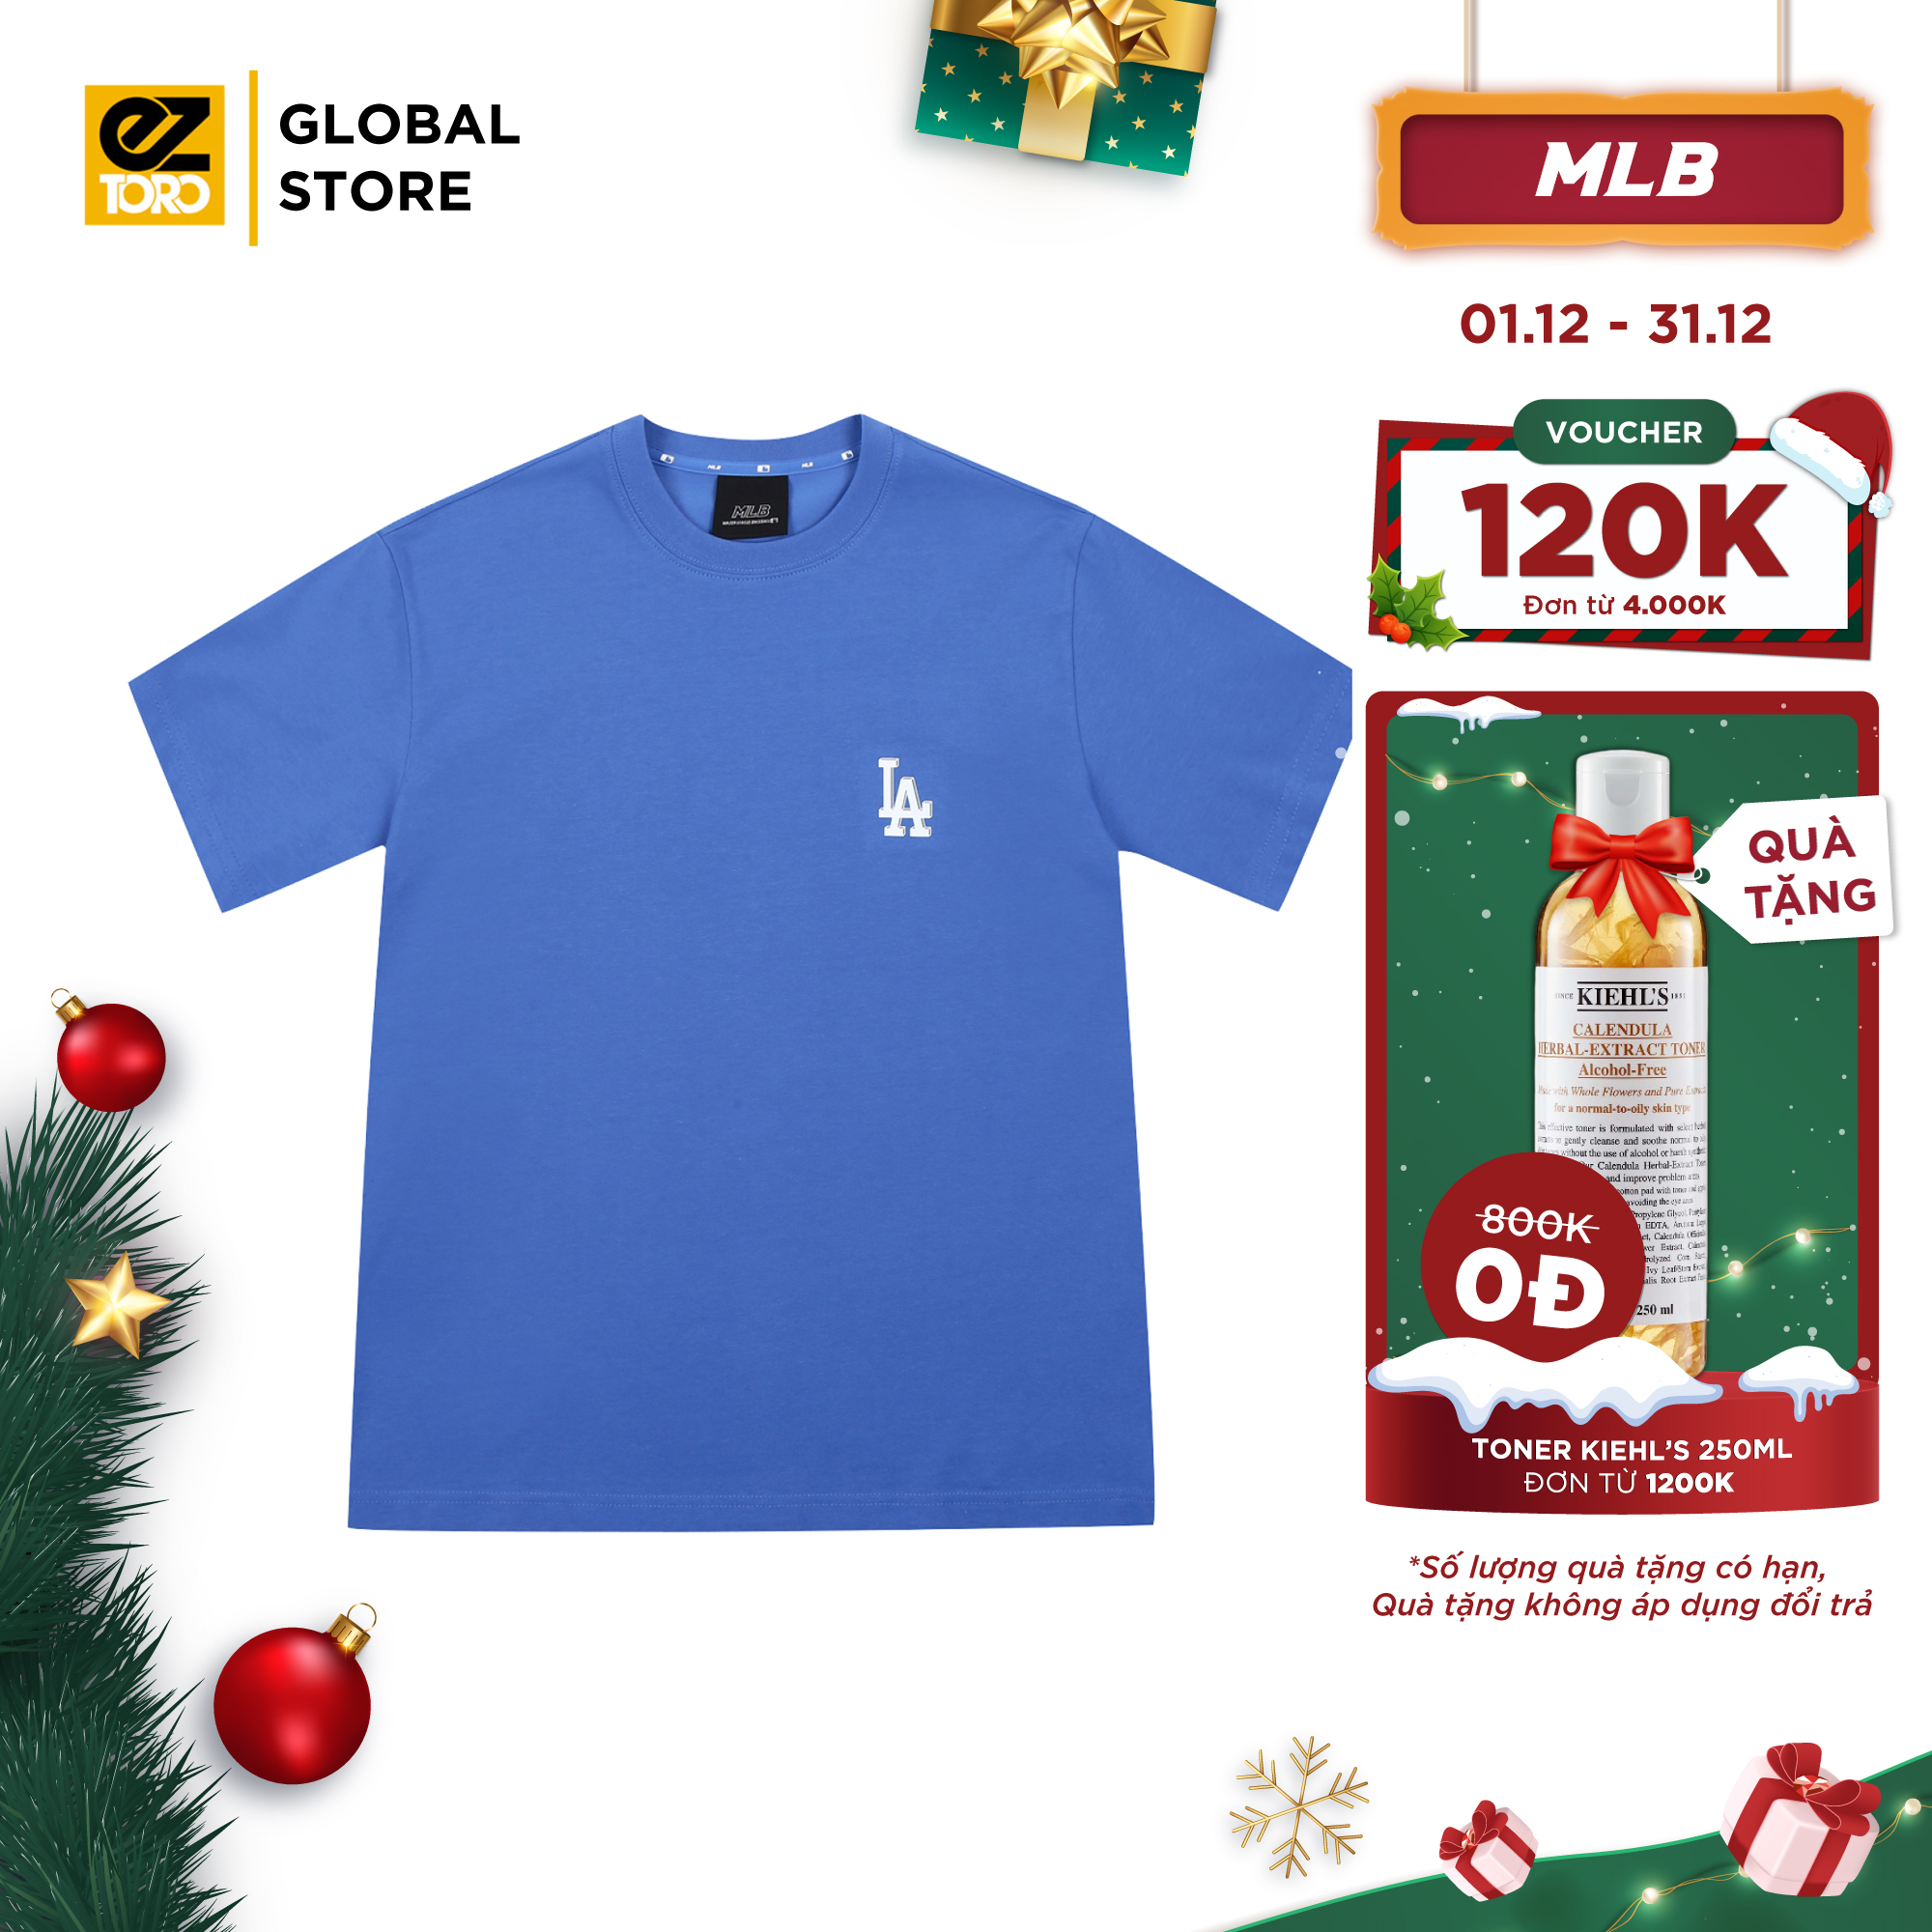 Global Gate  MLB Chính Hãng Cửa hàng trực tuyến  Shopee Việt Nam